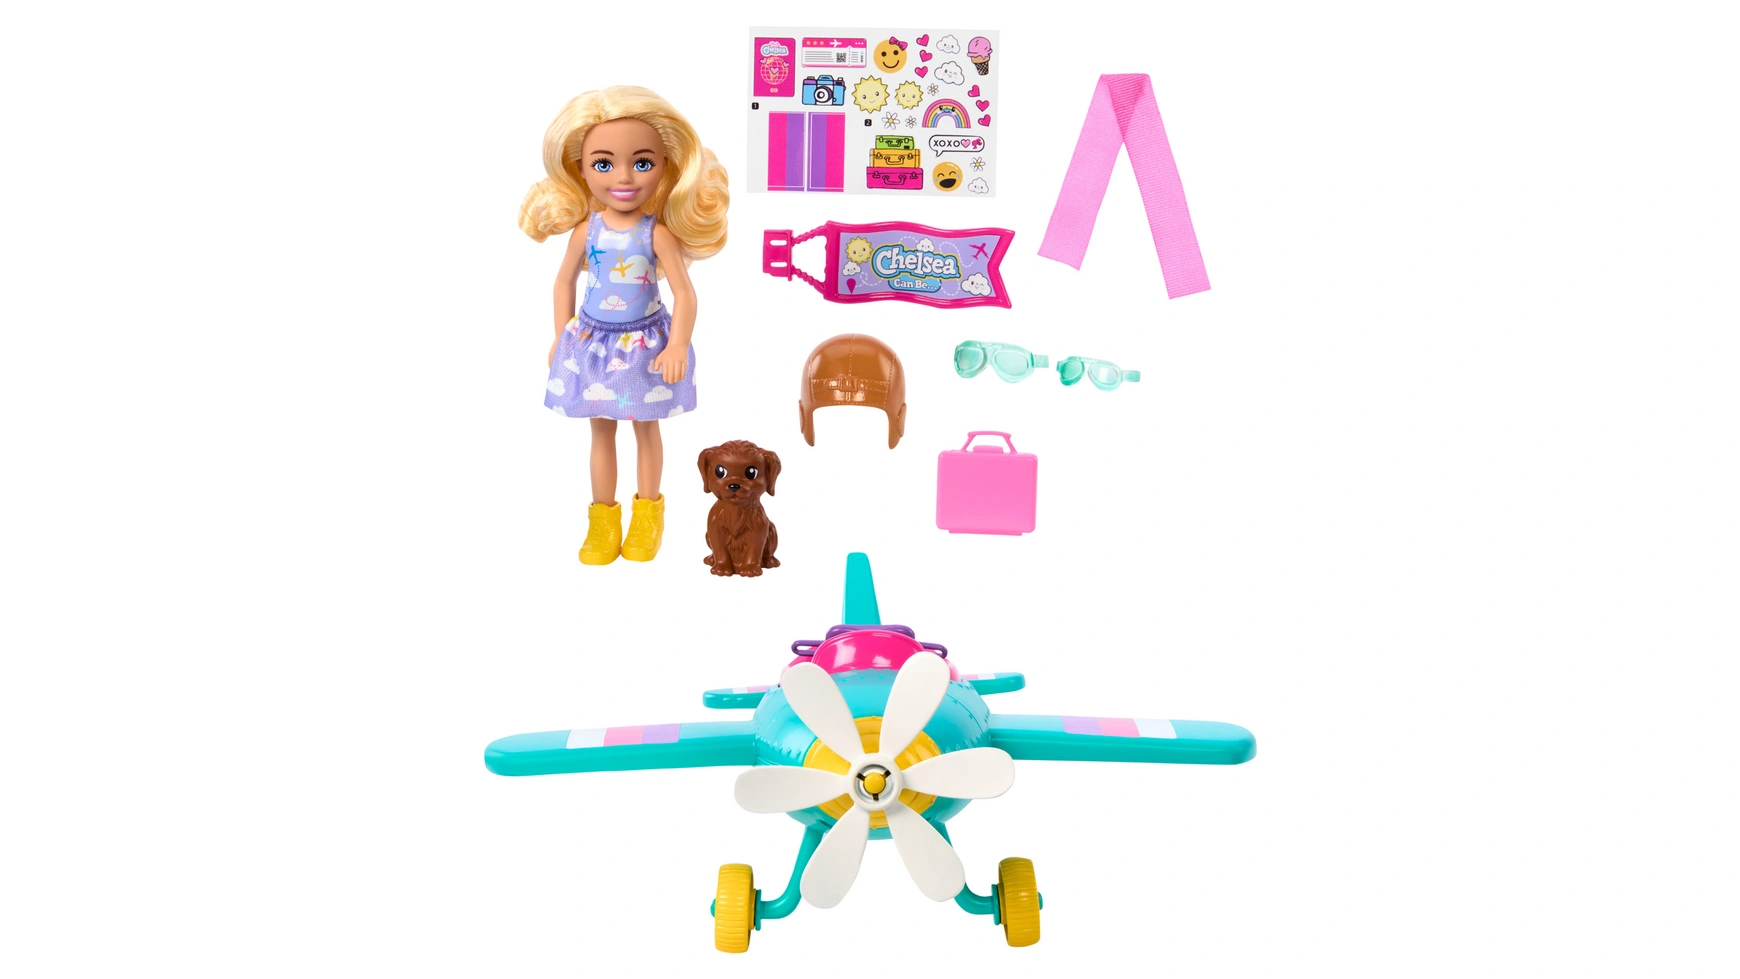 Barbie: Нью-Челси может быть самолетом раскройте свой внутренний пилот с помощью нашего радиоуправляемого самолета идеальная детская игрушка для аэрофотосъемки